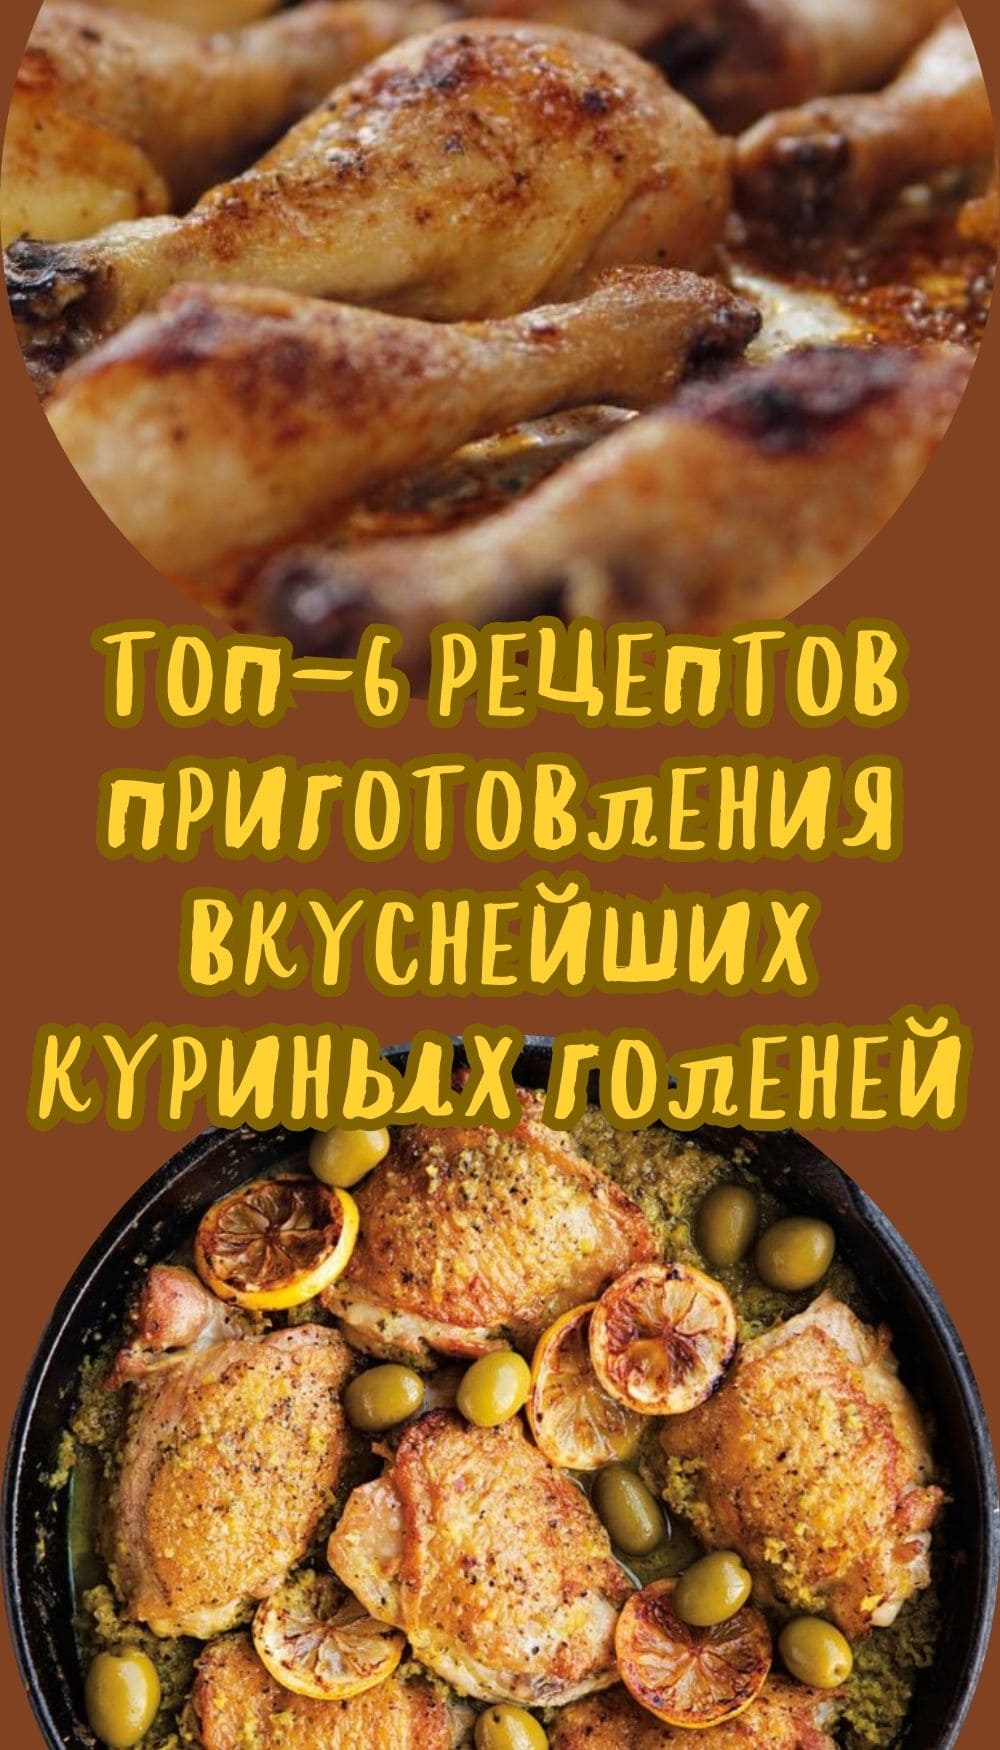 ТОП-6 рецептов приготовления вкуснейших куриных голеней